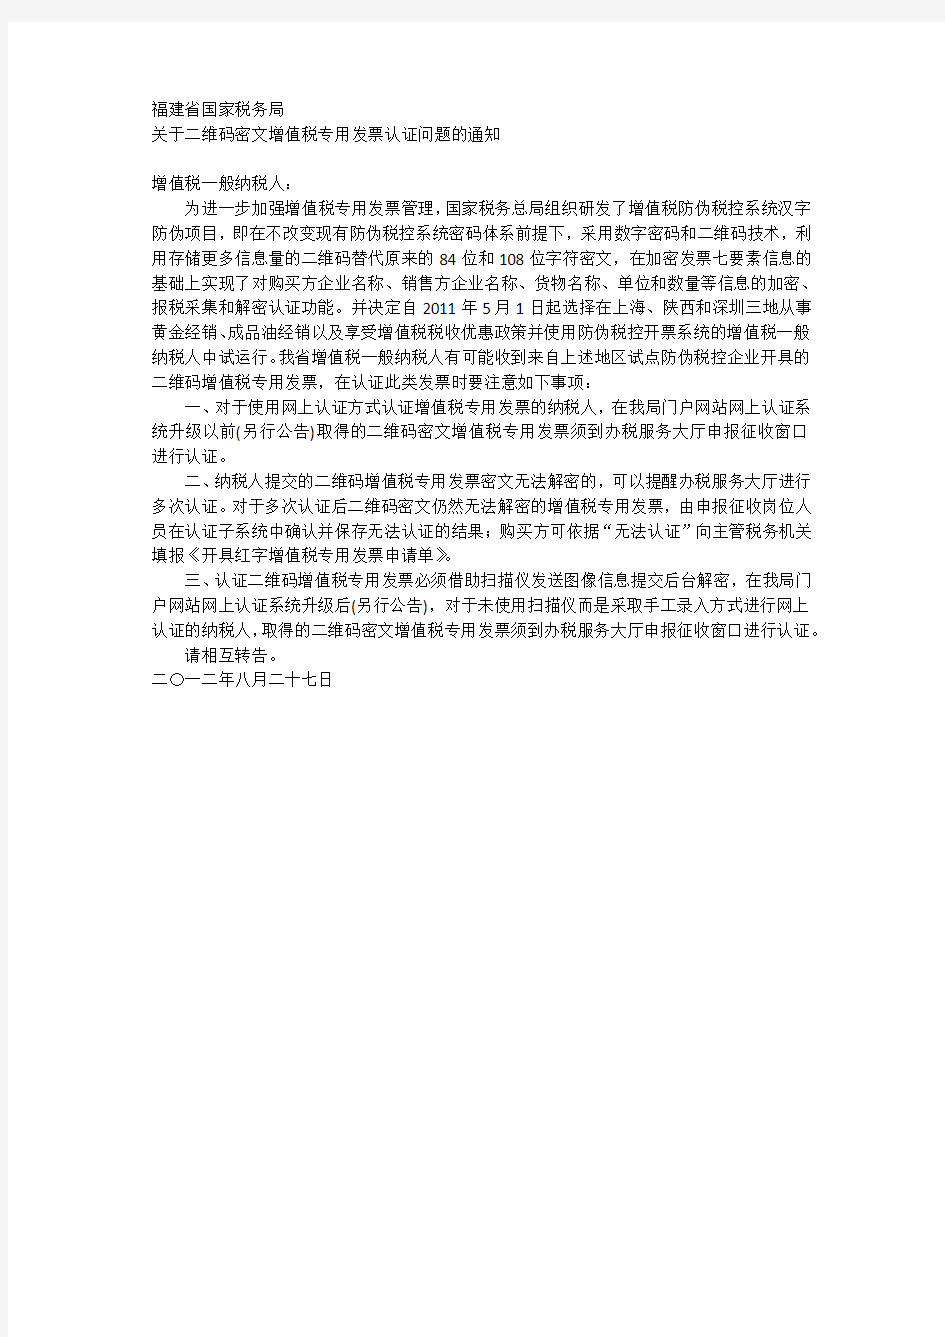 福建国税关于二维码密文增值税专用发票认证问题的通知2012.8.27